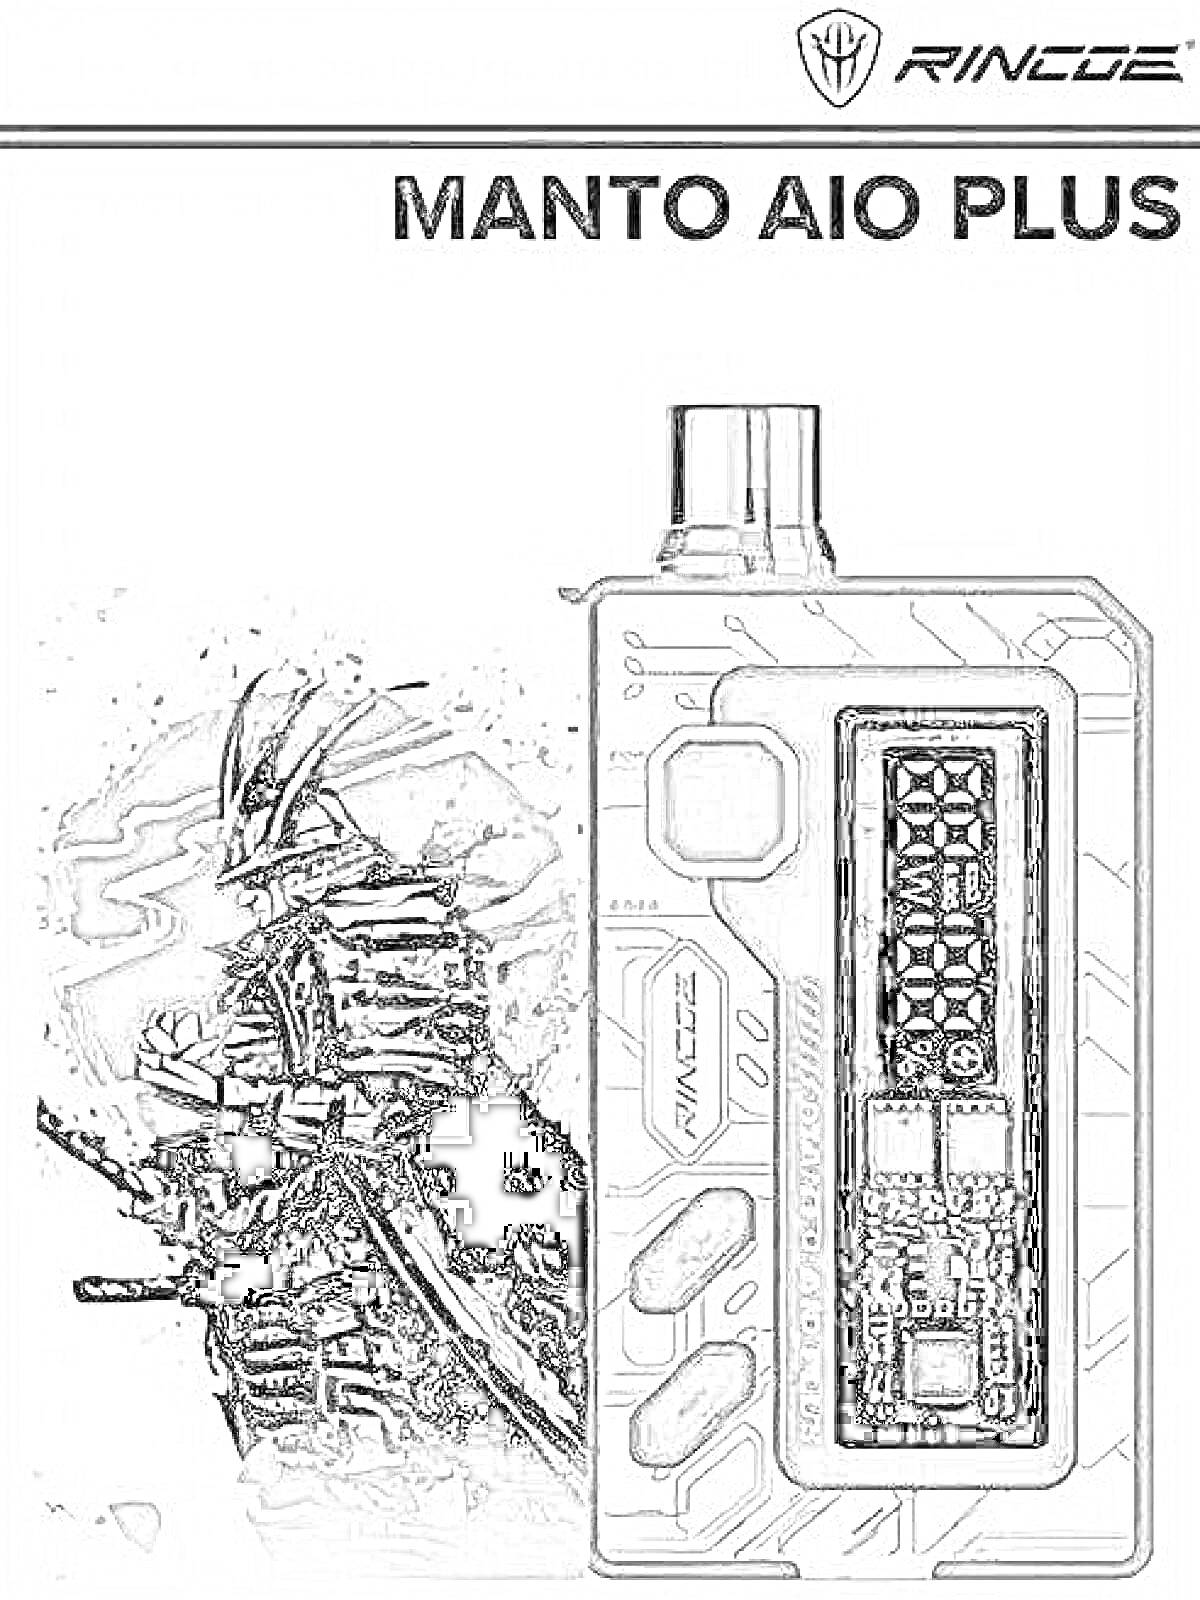 Вейп-комплект Manto AIO Plus с черно-белым изображением воина и схемным дизайном корпуса